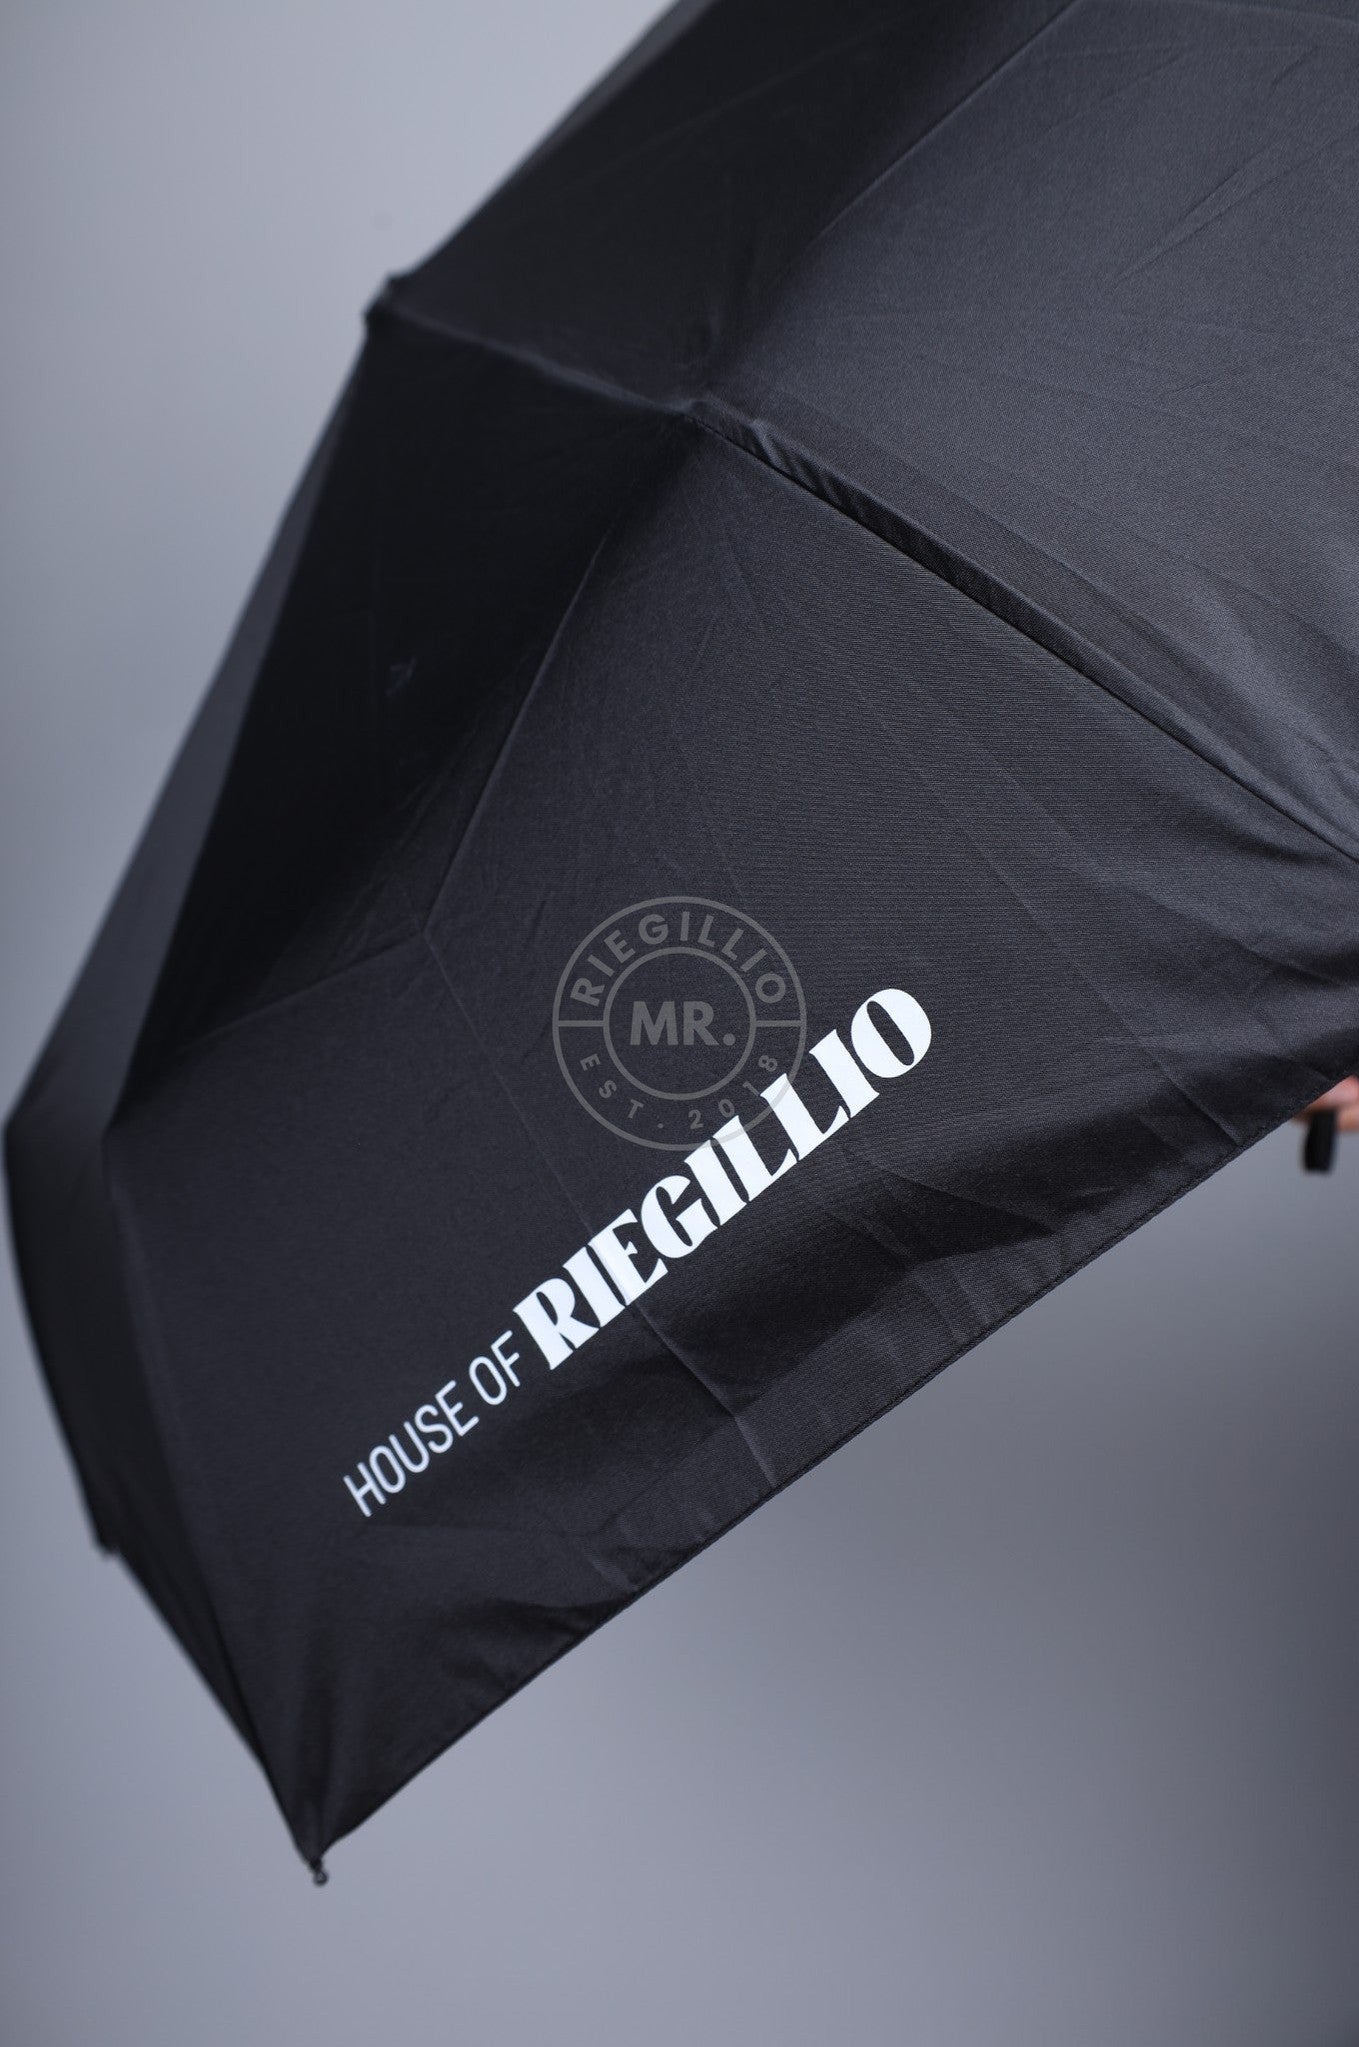 Black House of Riegillio Umbrella at MR. Riegillio